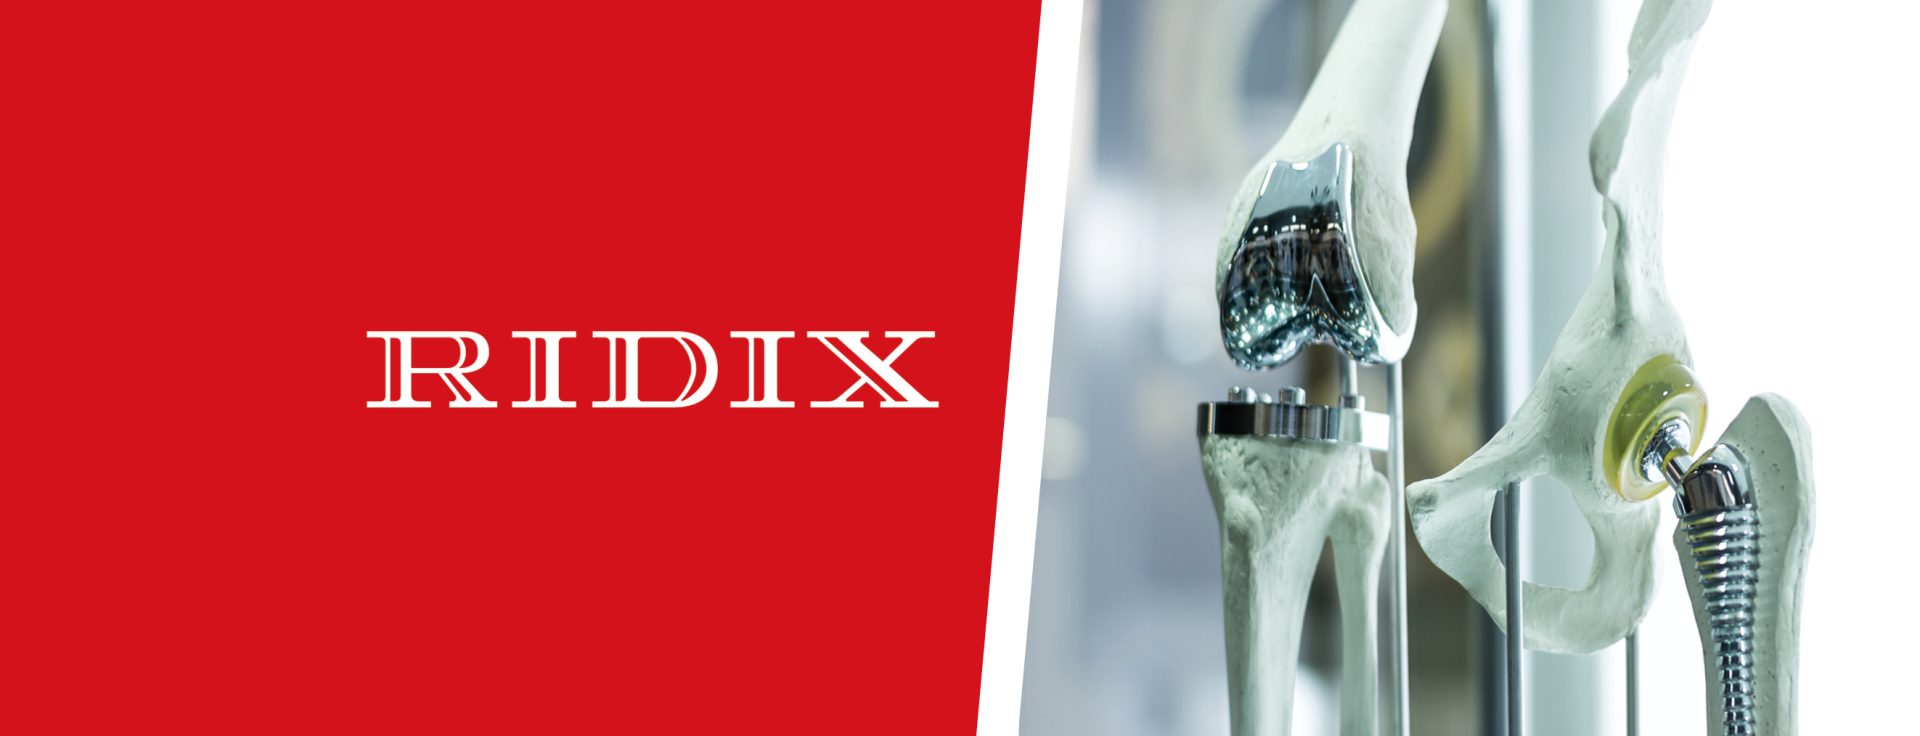 Ridix offre ai suoi clienti un pacchetto completo di soluzioni per il settore medicale: stampanti 3D, polveri di leghe metalliche, utensili di precisione, oli industriali, marcatrici industriali per la codifica UDI, software per l'elaborazione dati 3D.